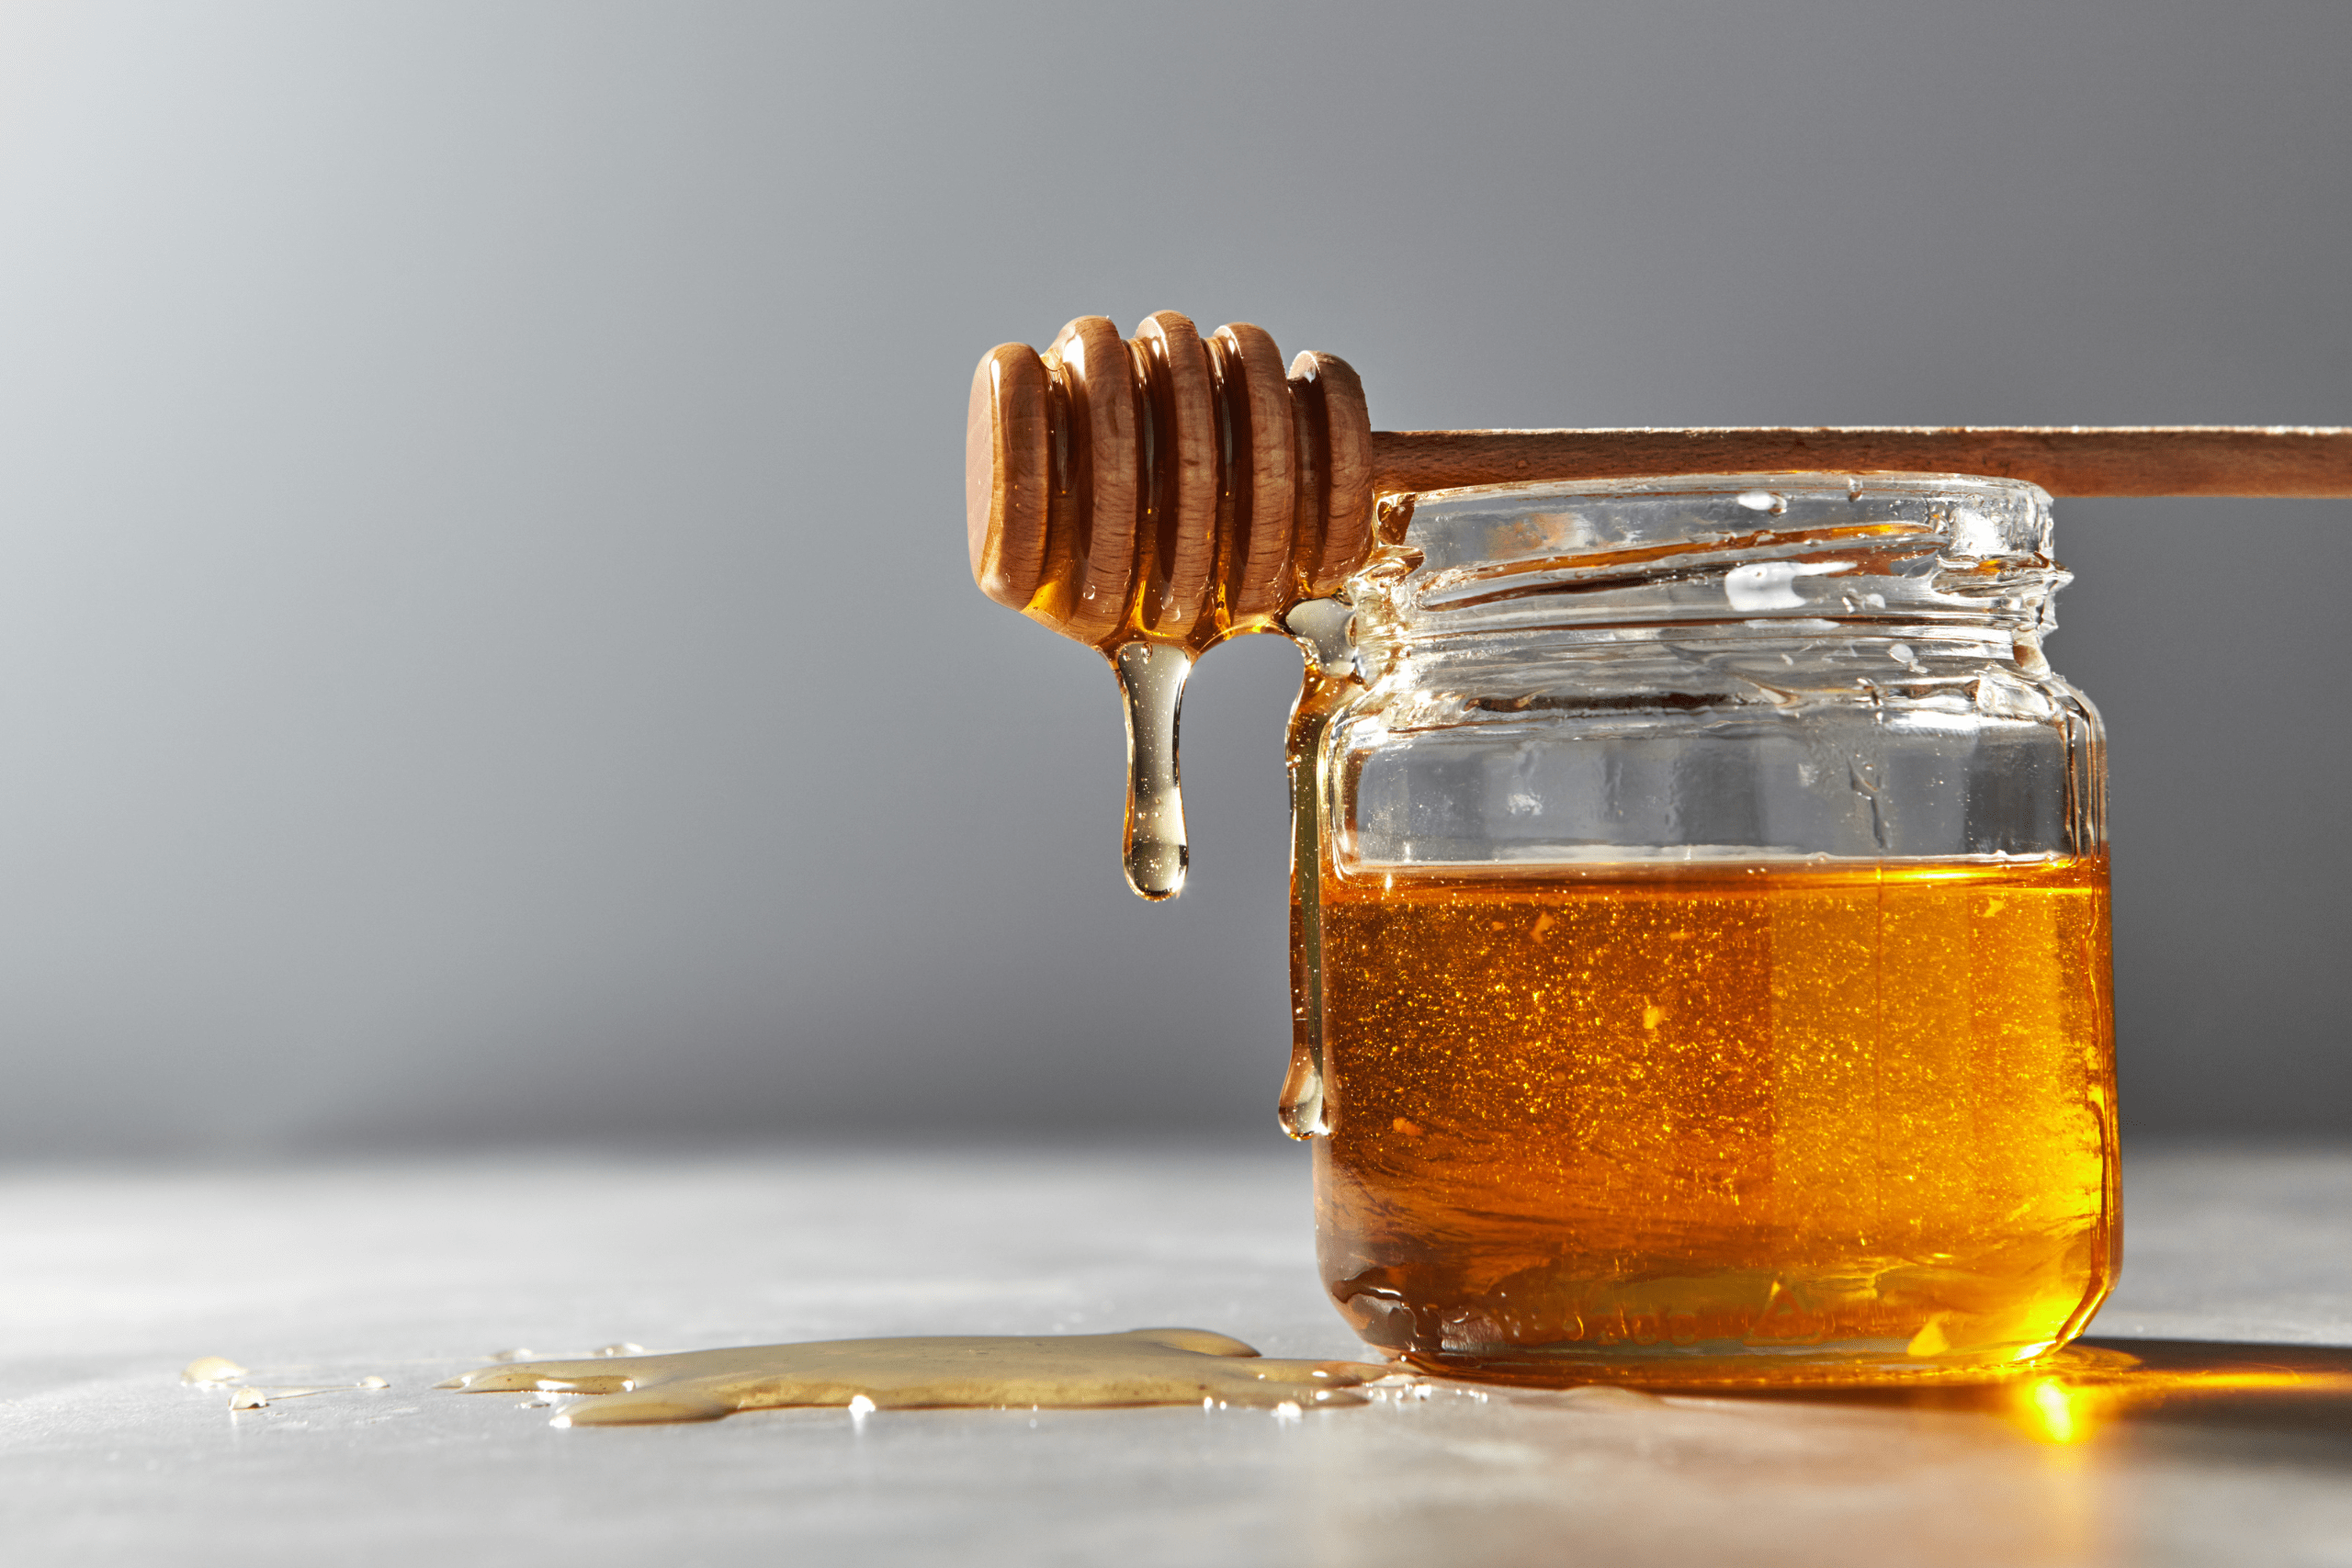 A jar of golden honey with a wooden honey dipper